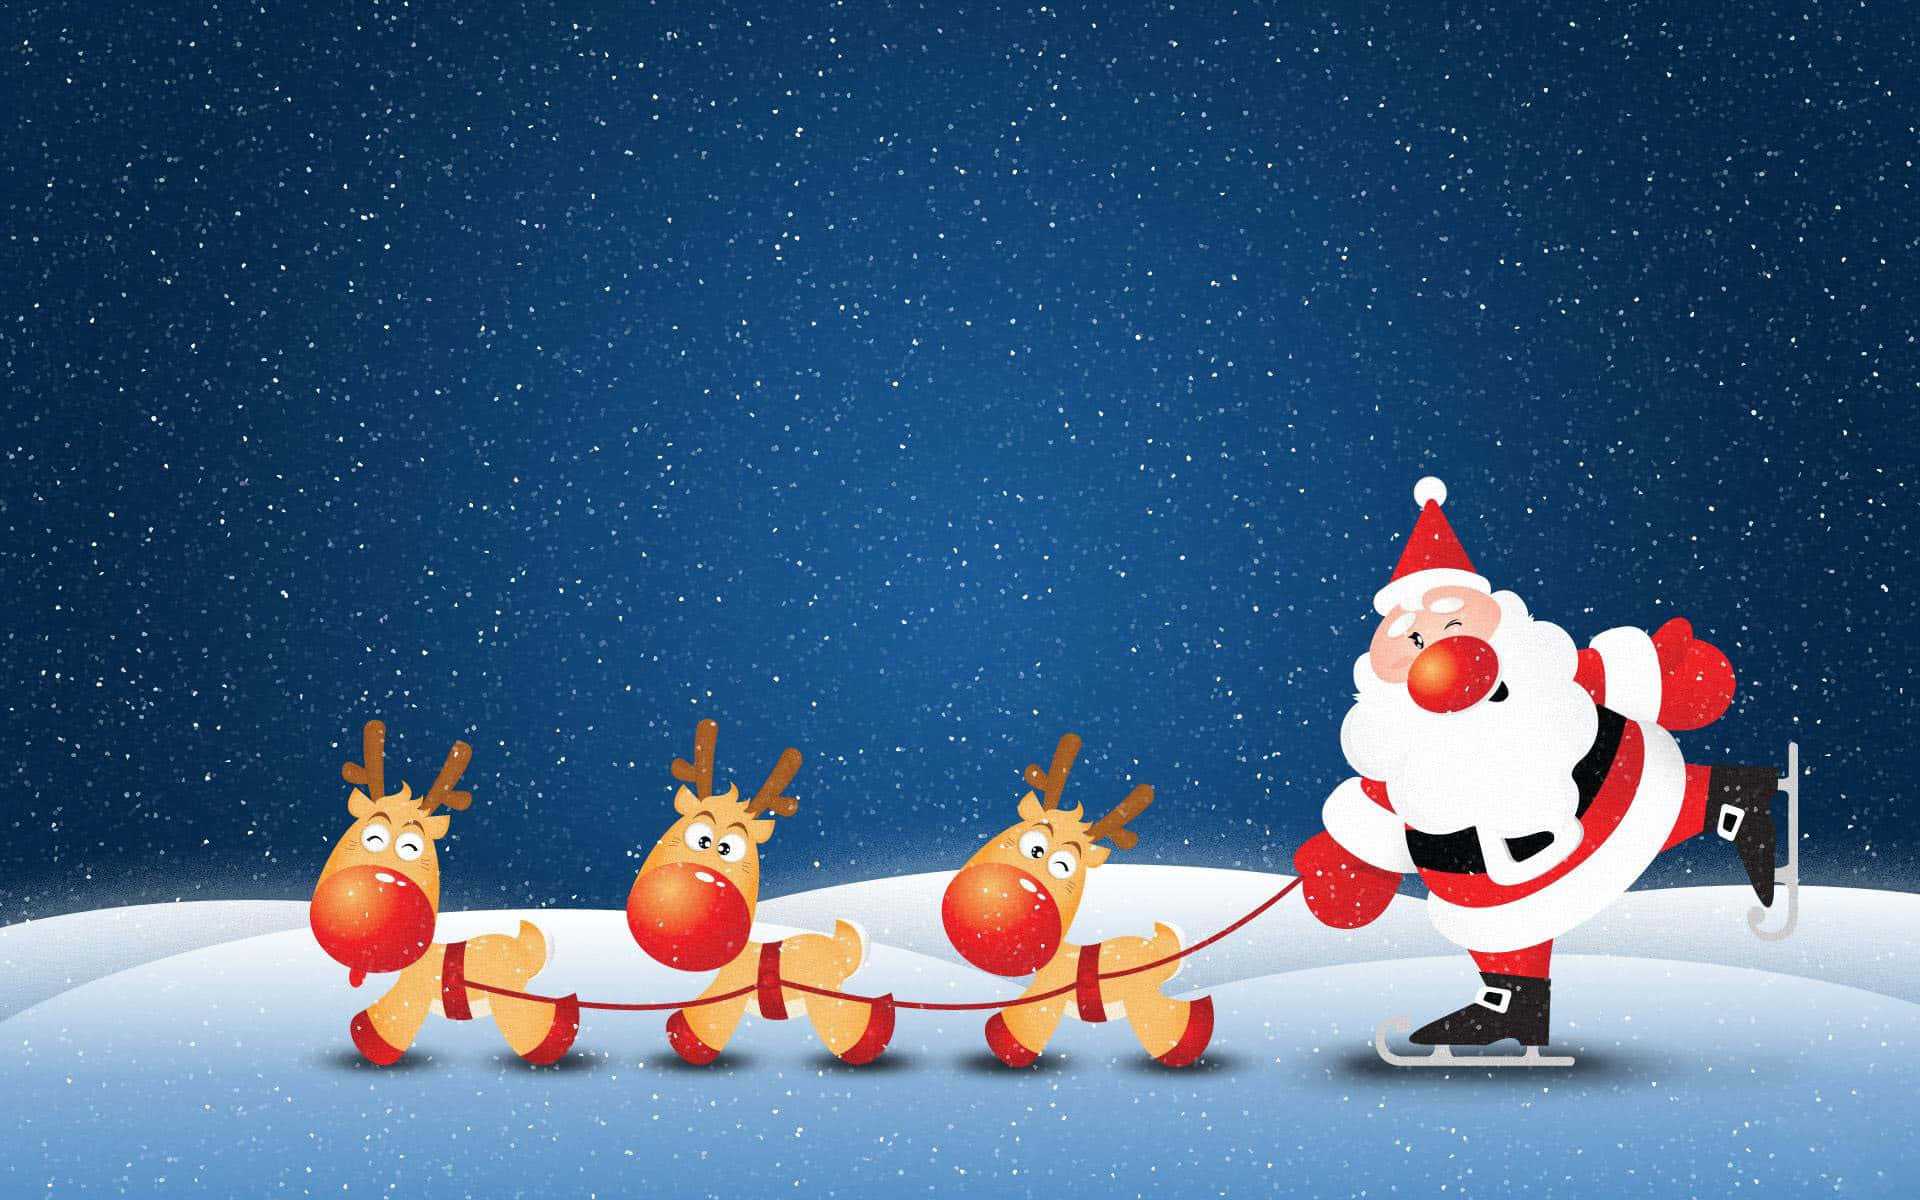 Lustigerweihnachts-zoom-hintergrund: Santa Mit Drei Rentieren.